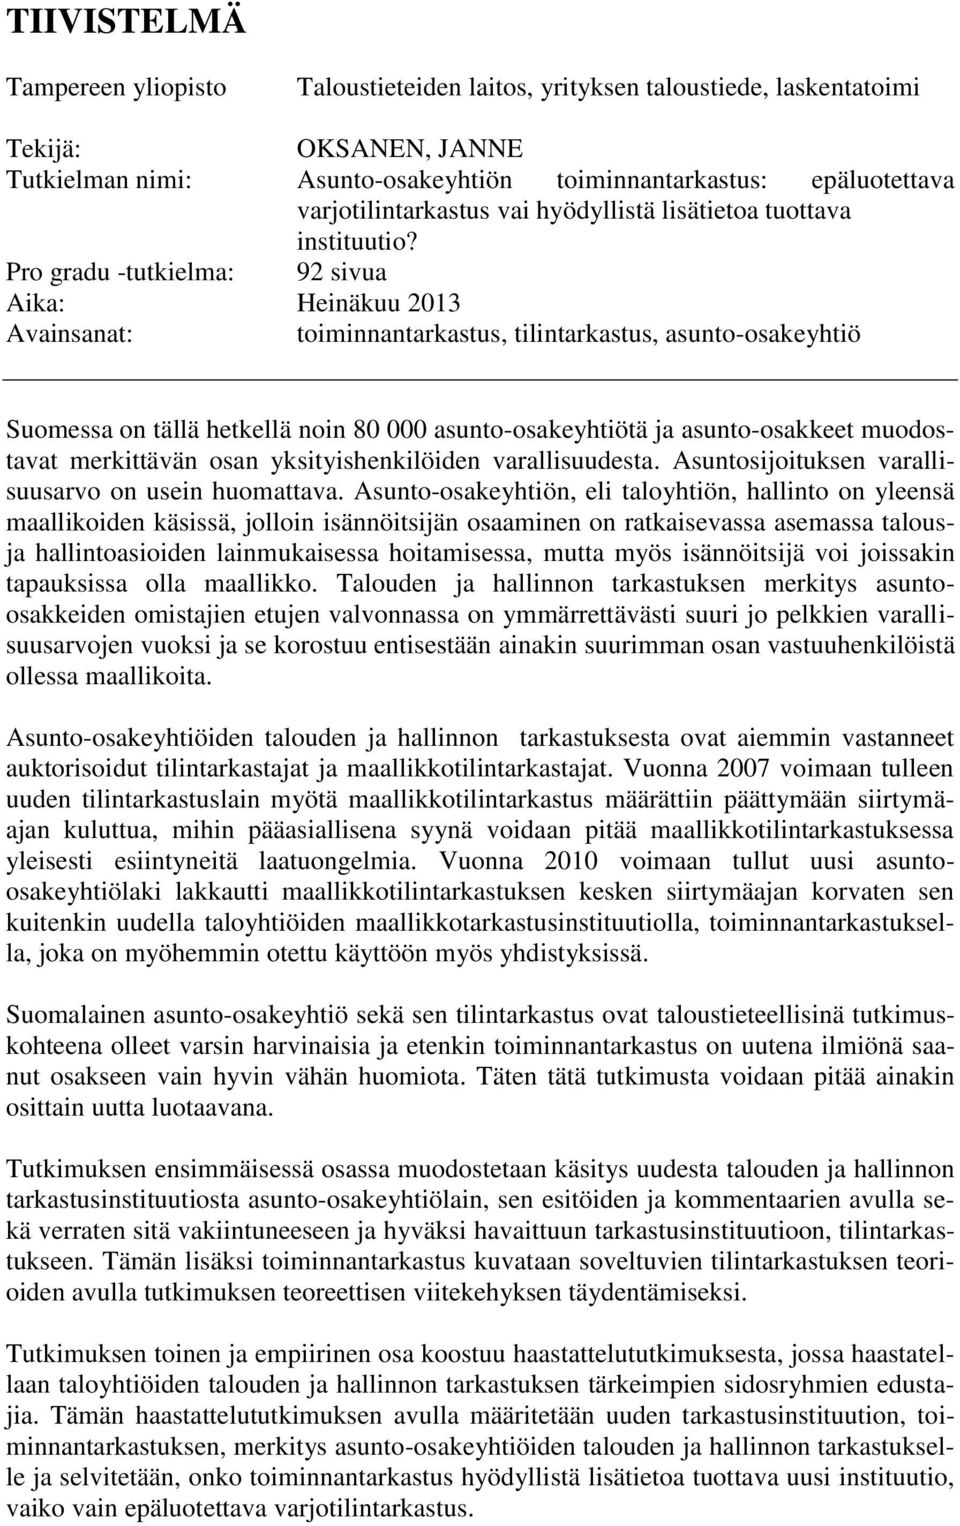 Pro gradu -tutkielma: 92 sivua Aika: Heinäkuu 2013 Avainsanat: toiminnantarkastus, tilintarkastus, asunto-osakeyhtiö Suomessa on tällä hetkellä noin 80 000 asunto-osakeyhtiötä ja asunto-osakkeet